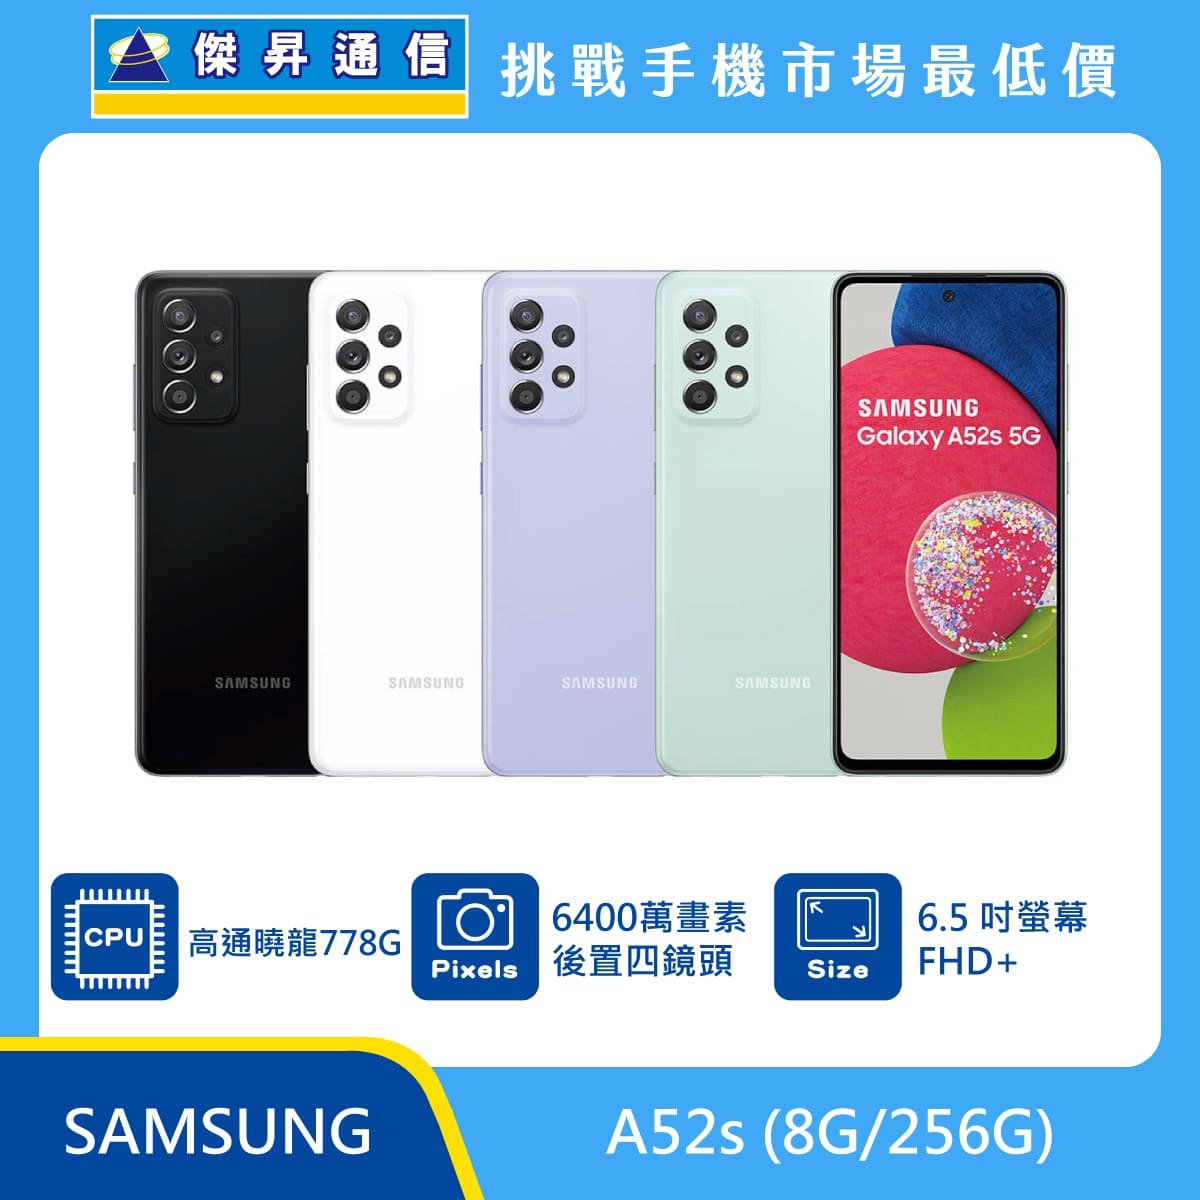 SAMSUNG A52s (8G/256G)